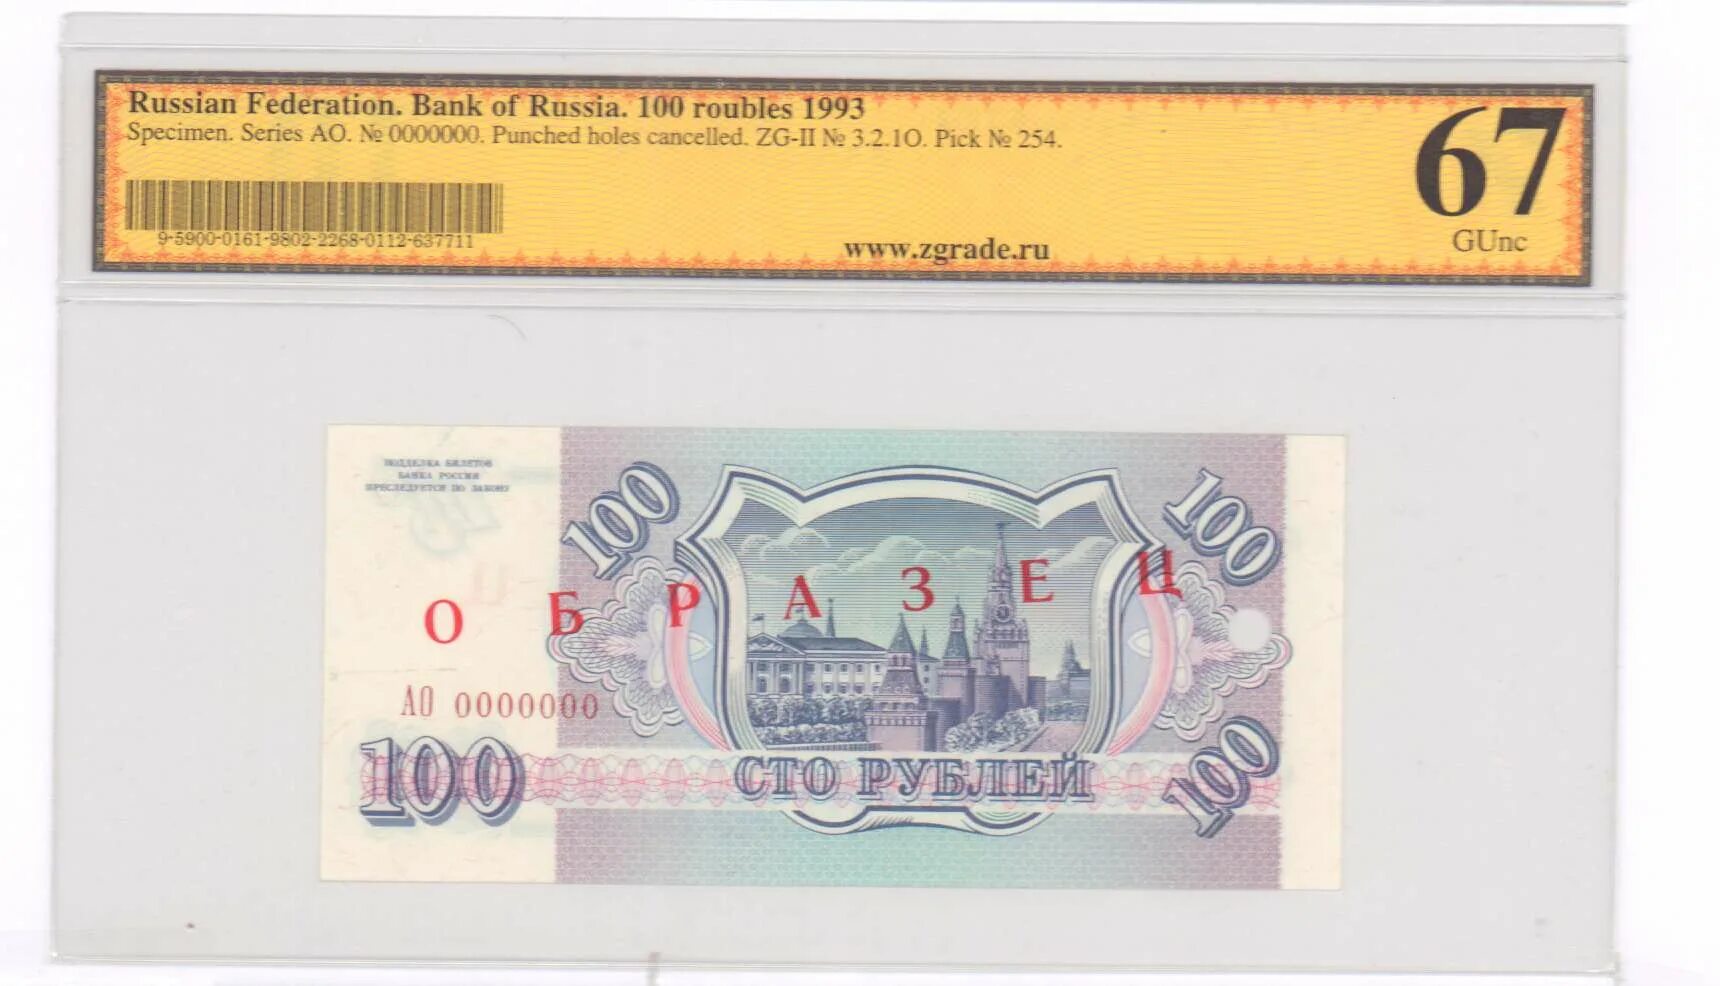 Рубли 1993 купюры. Размер купюры 100 рублей в сантиметрах. Банкнота 100 рублей 1993 года что за башня на ней.